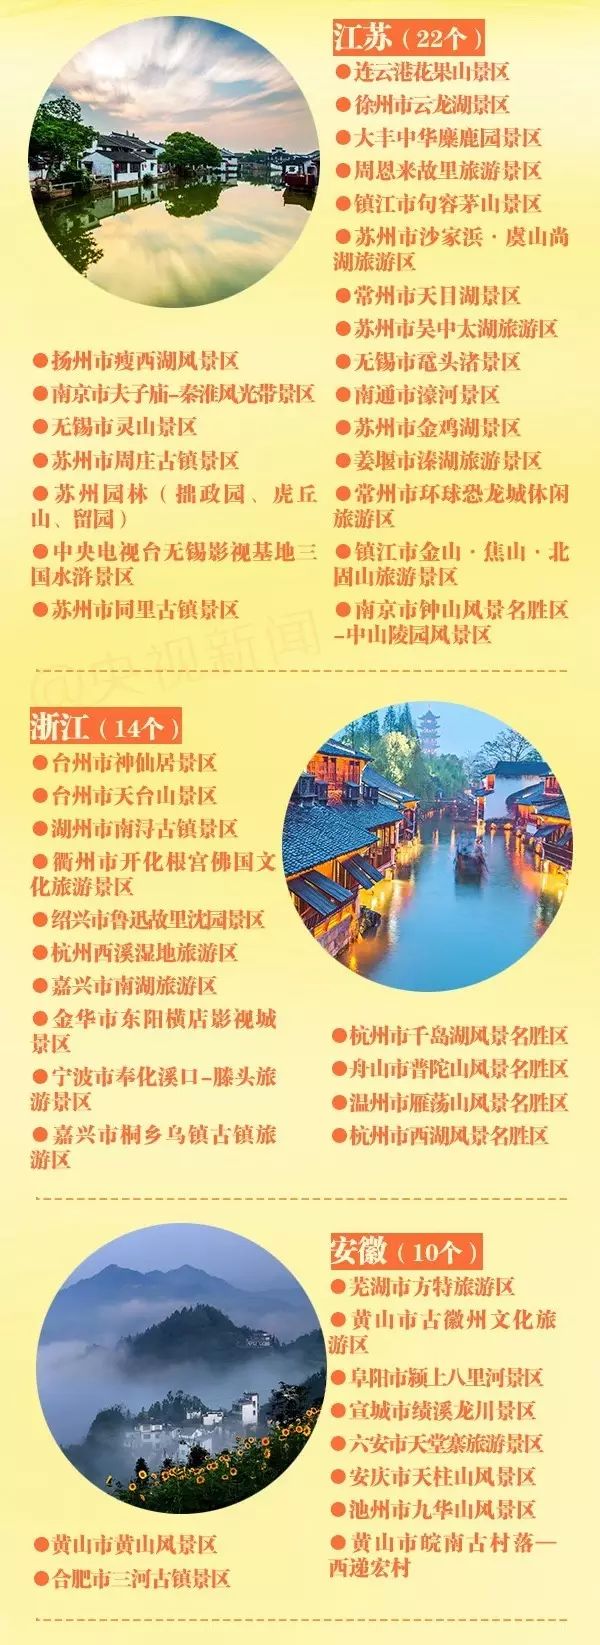 中国5a景区一览表图片